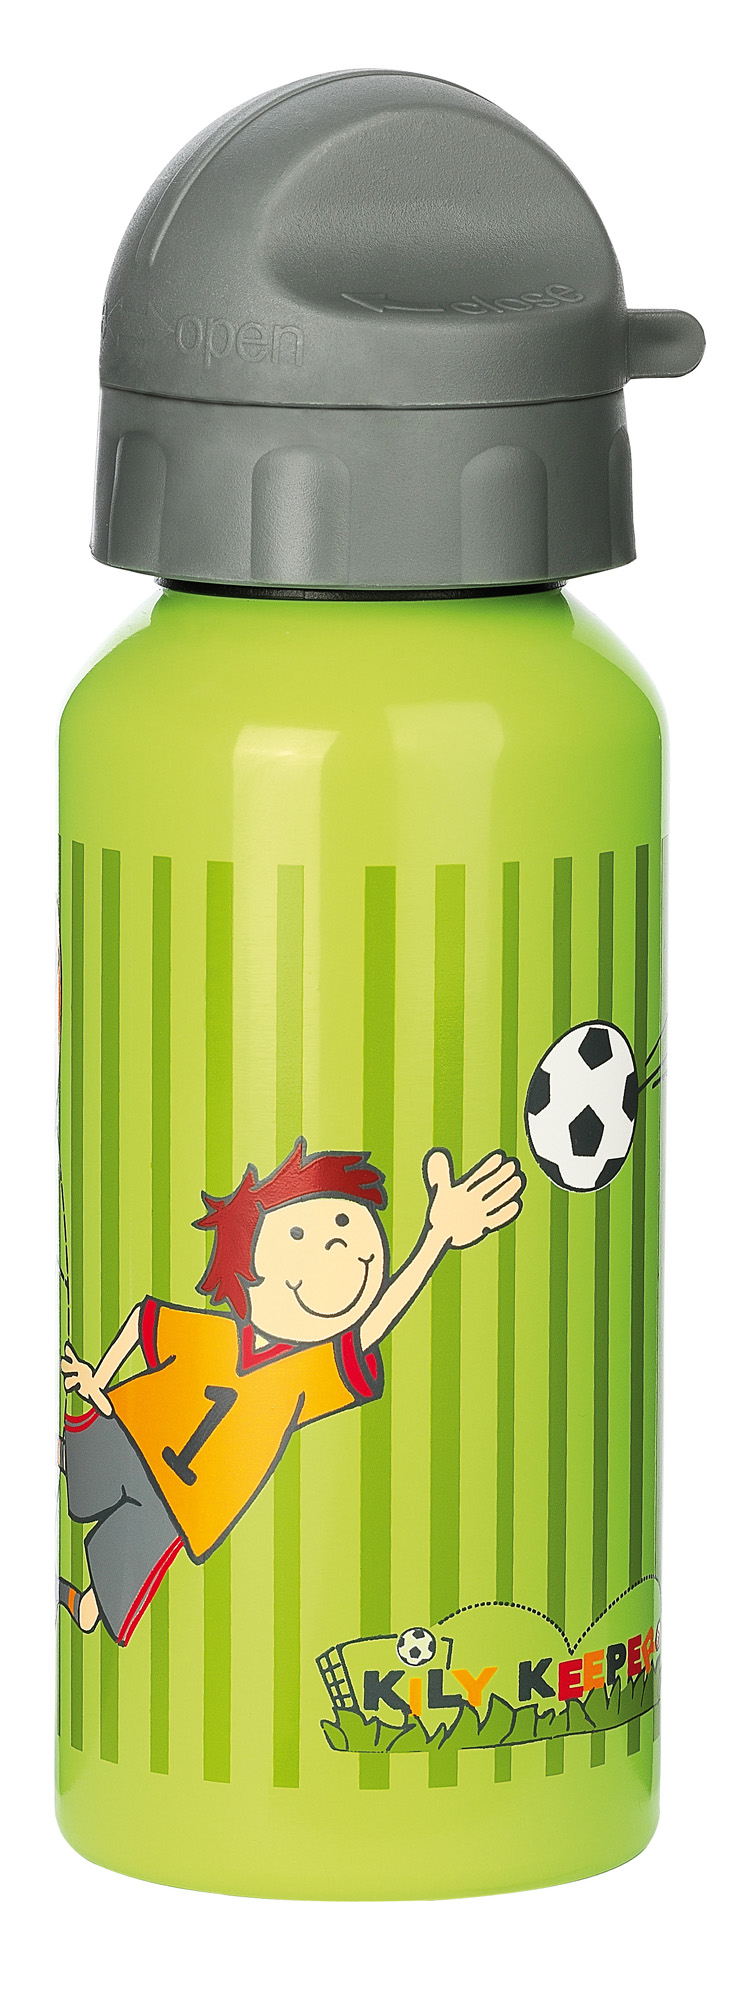 Kids' water bottle for little football fans